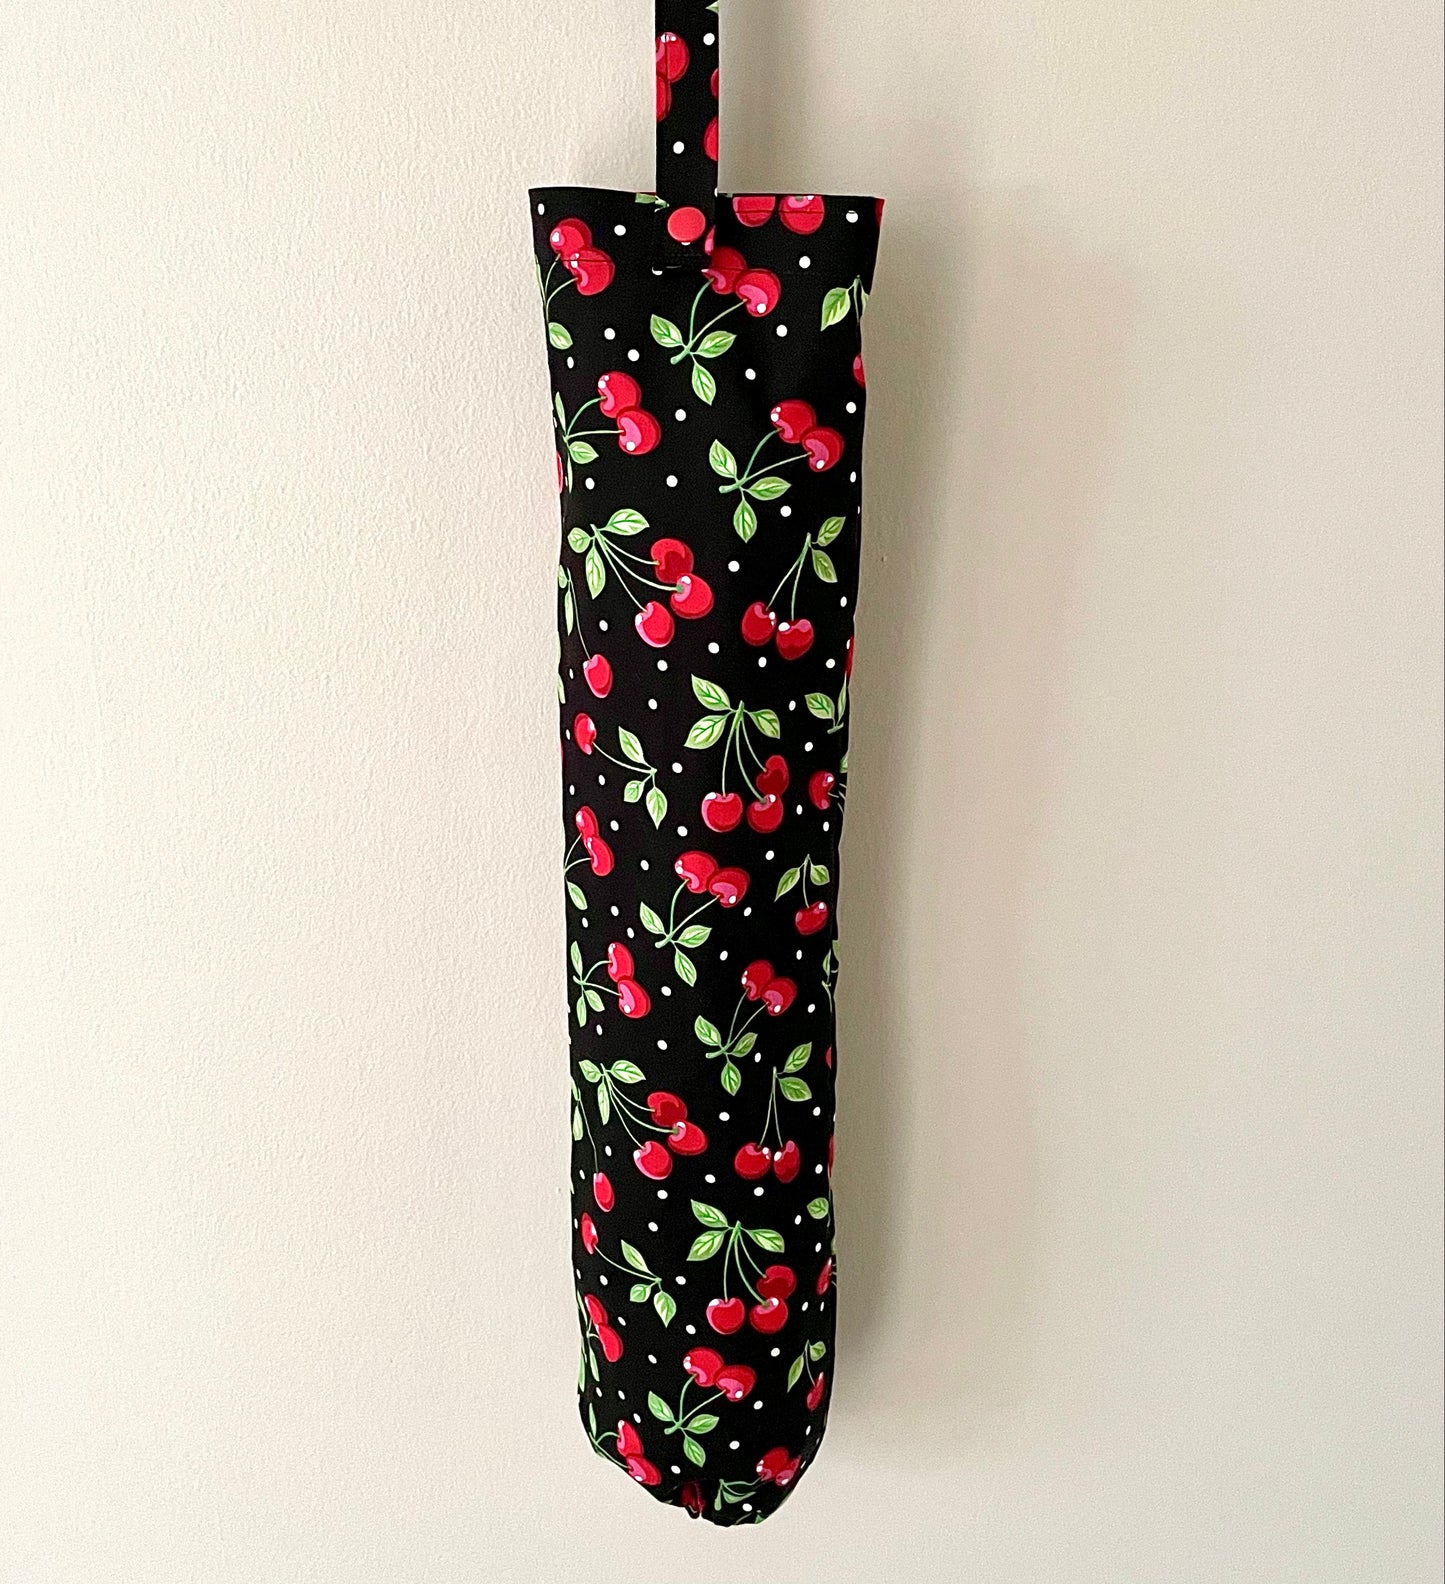 Plastic Bag Holder Dispenser - Cherries